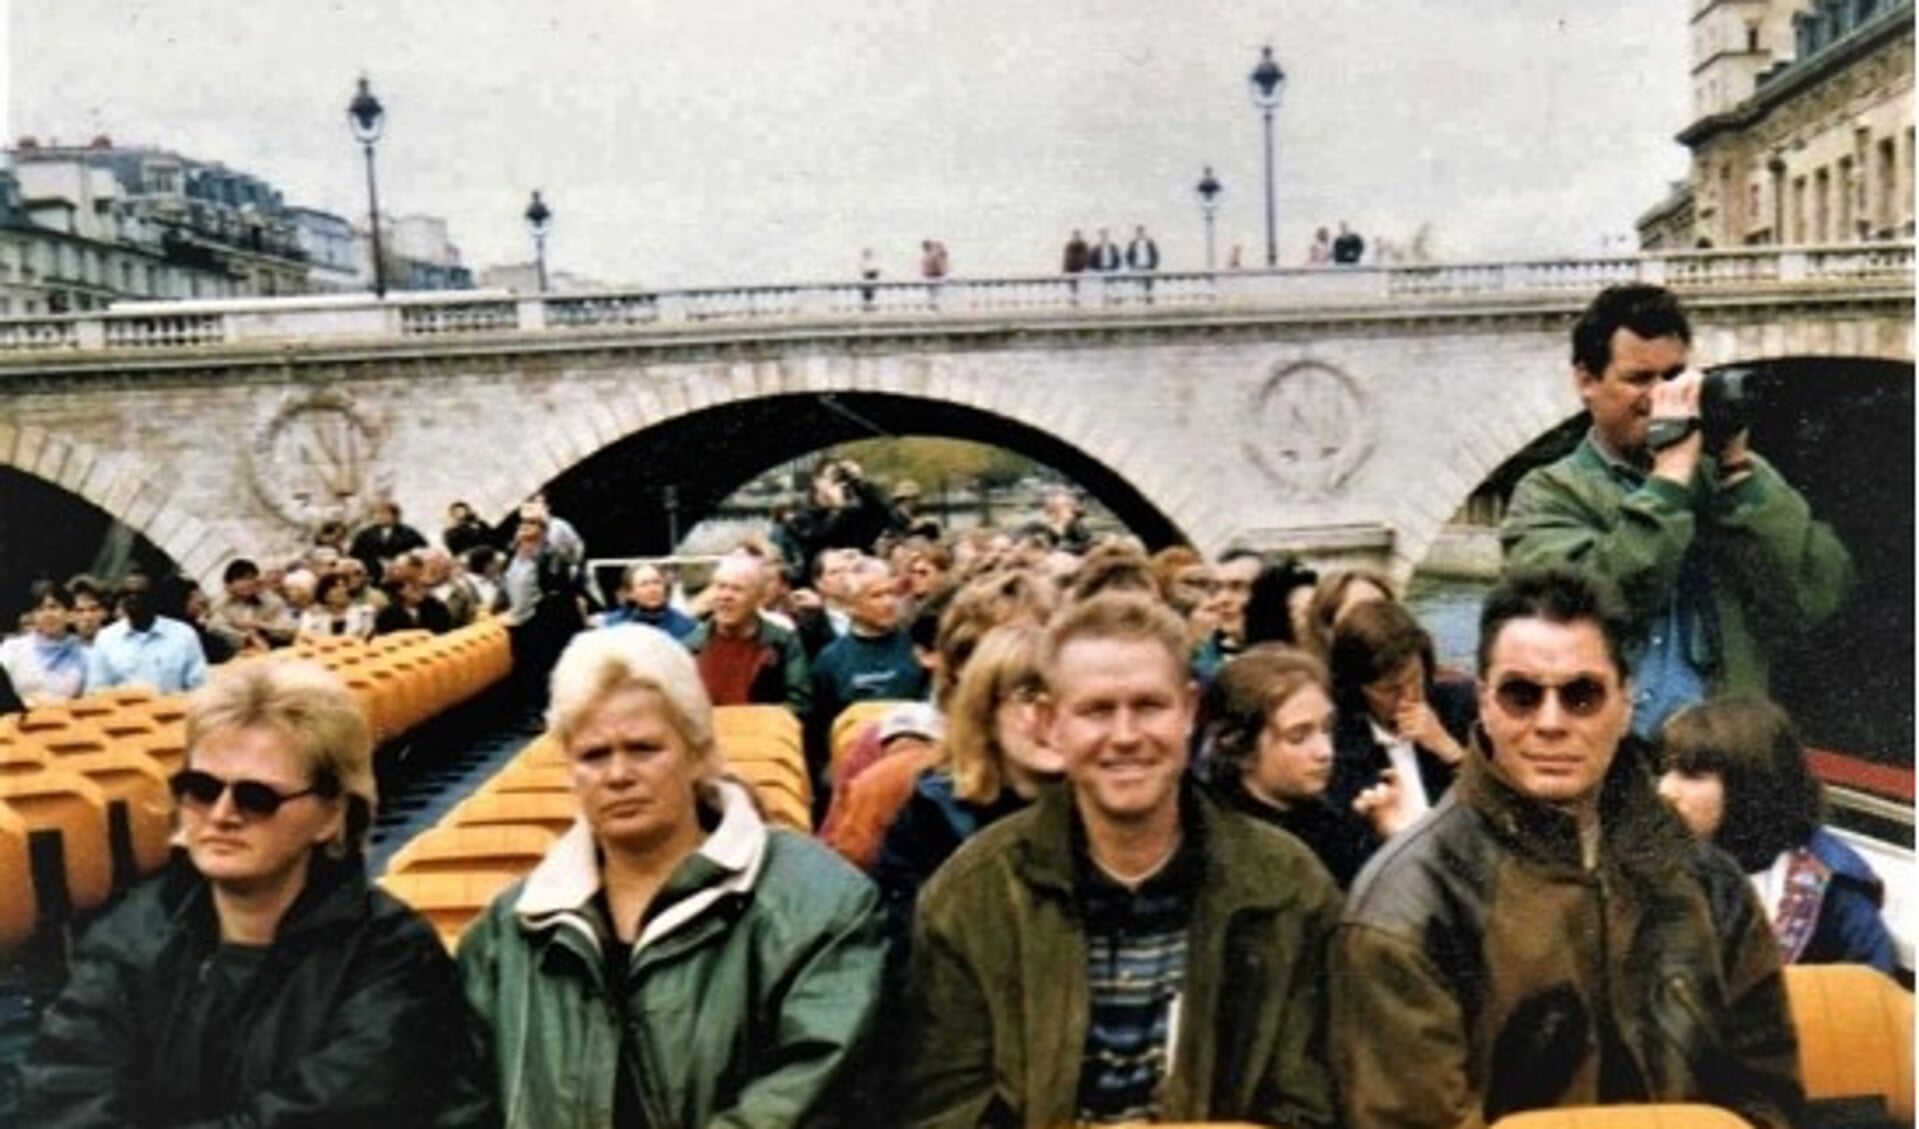 De driedaagse trip naar Parijs met behorende rondvaart over de Seine.